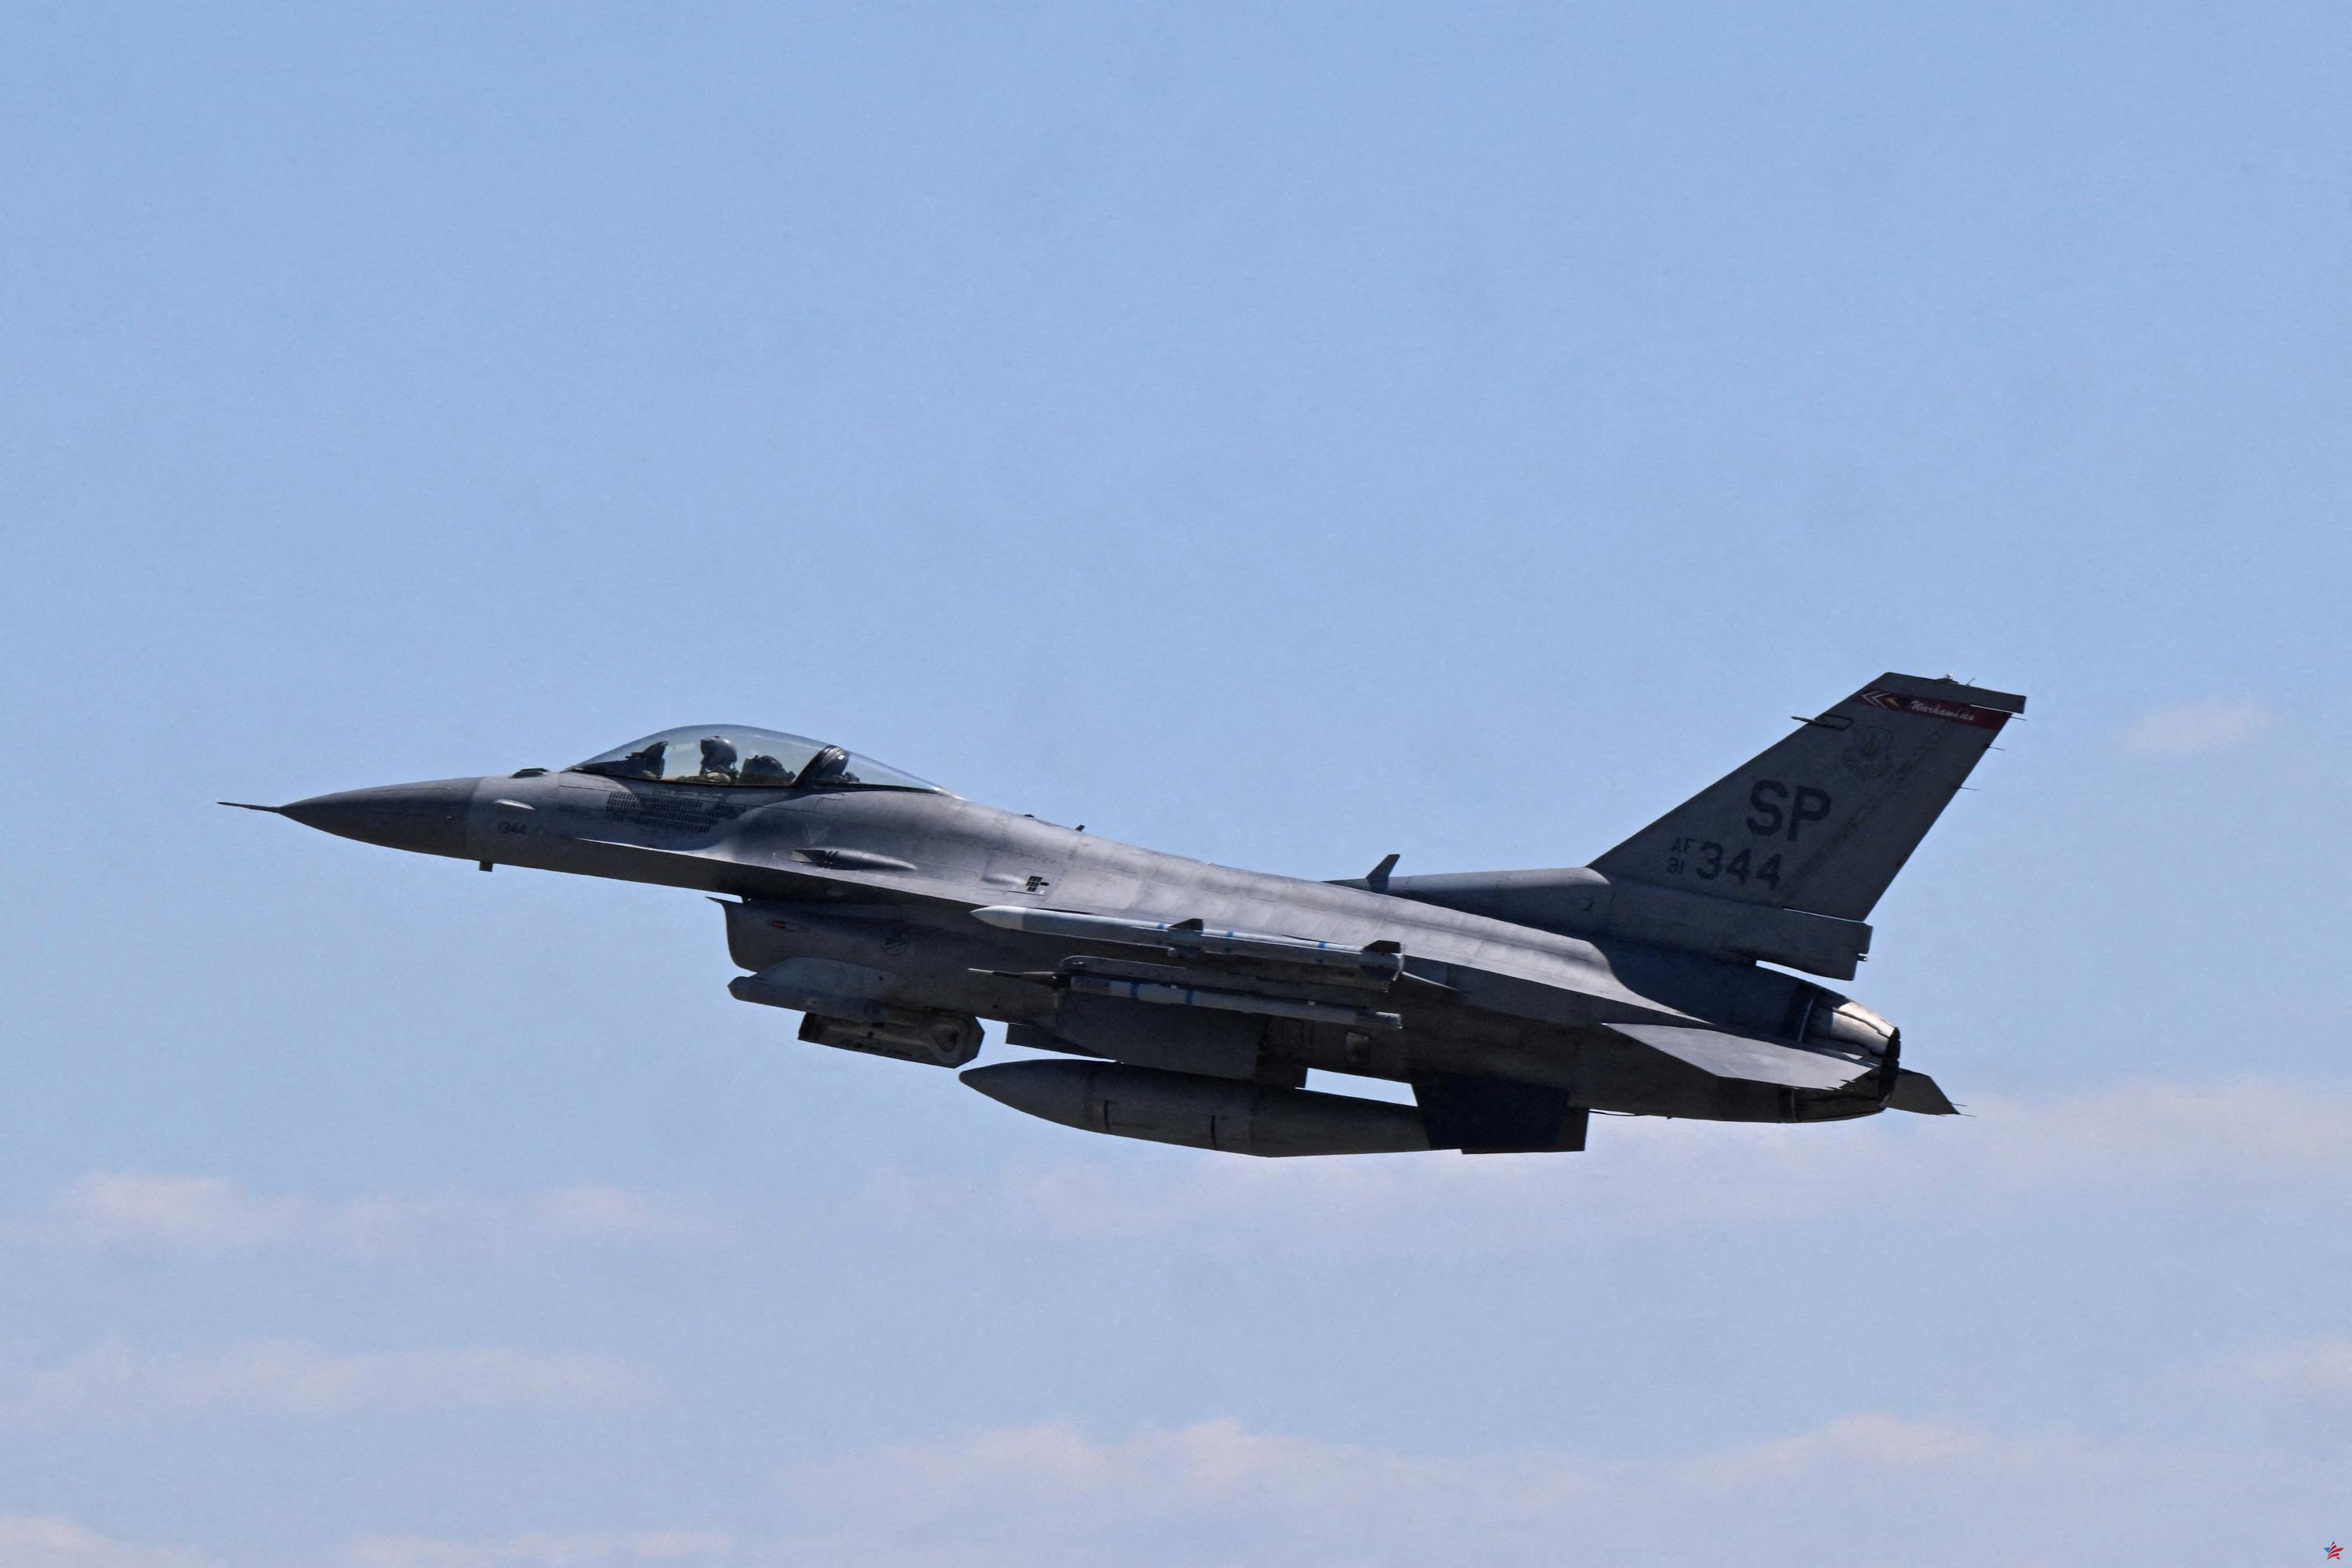 Washington da luz verde a los F-16 solicitados por Turquía